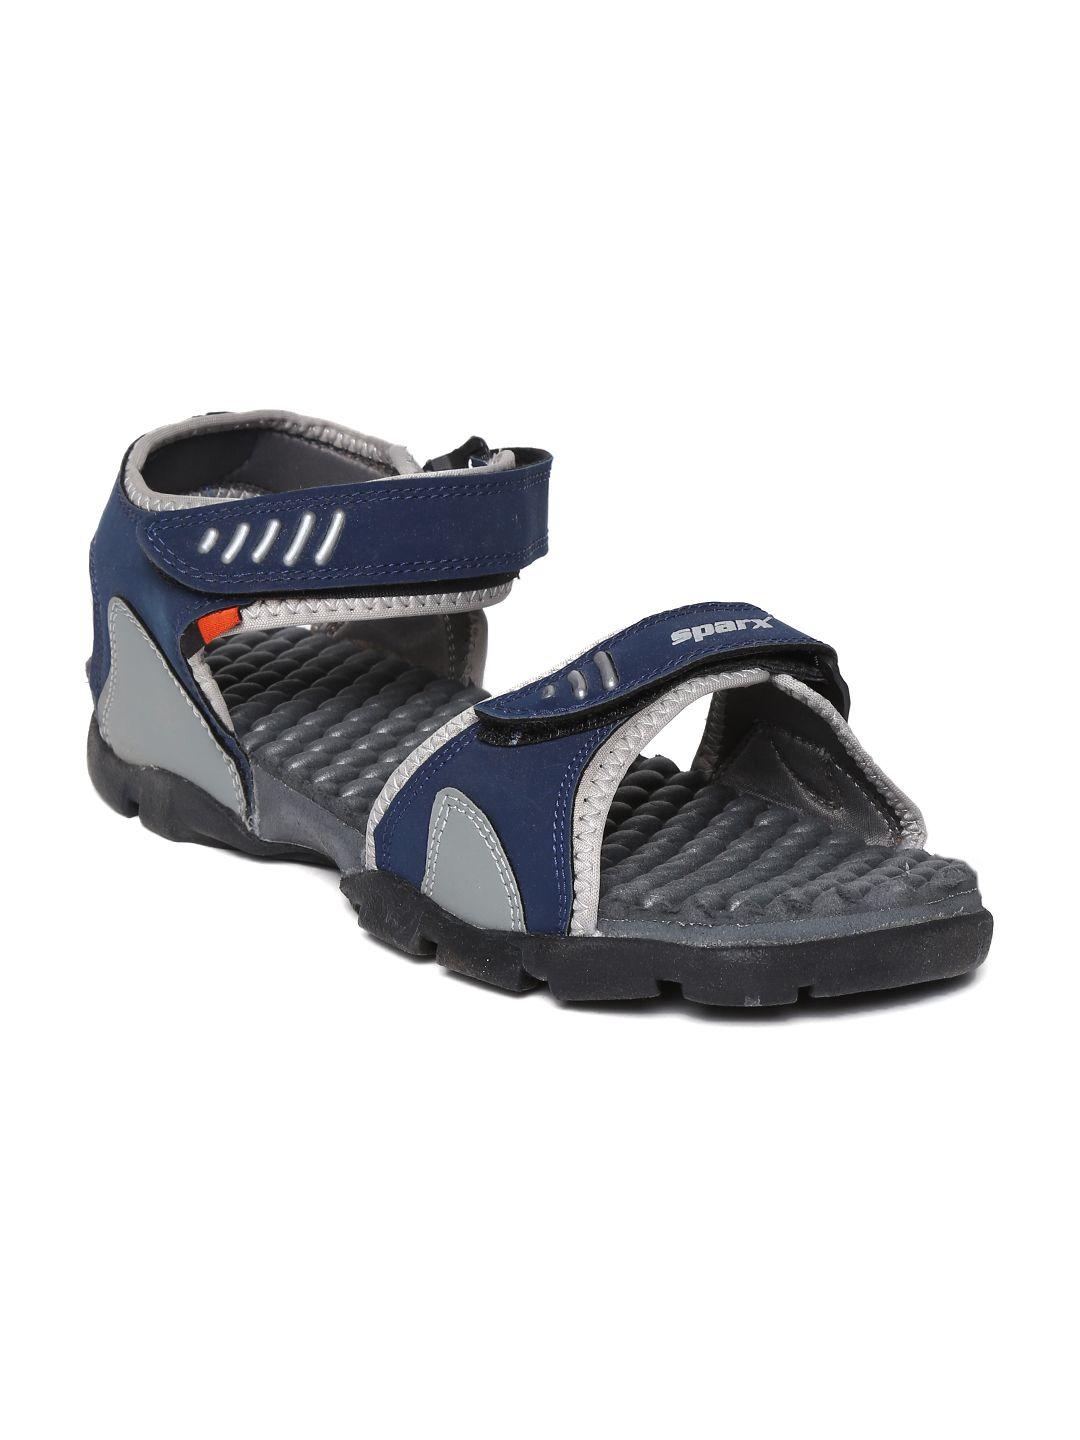 sparx-men-navy-&-grey-sports-sandals